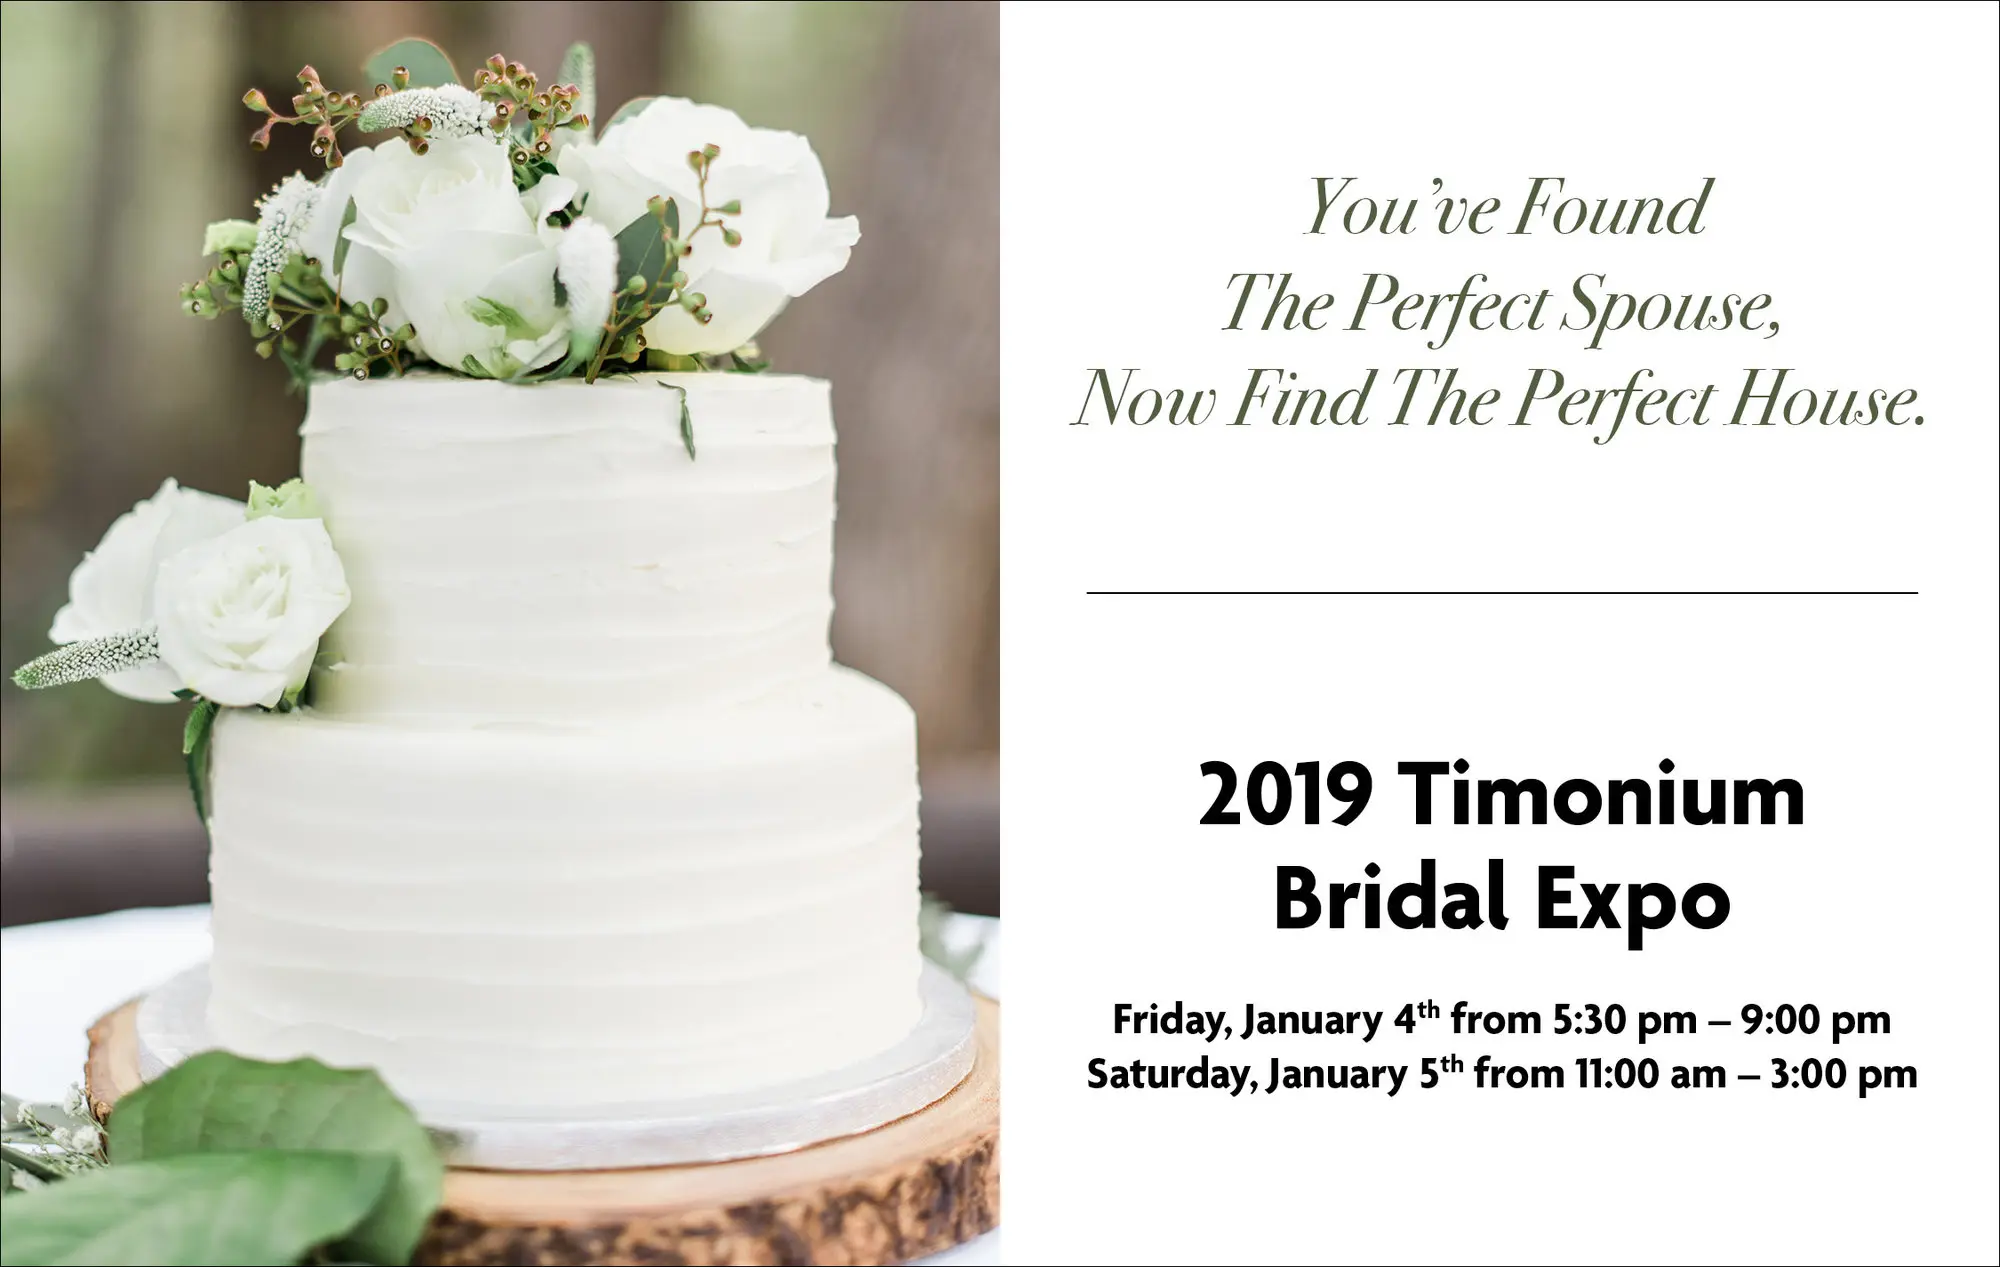 2019 Timonium Bridal Expo